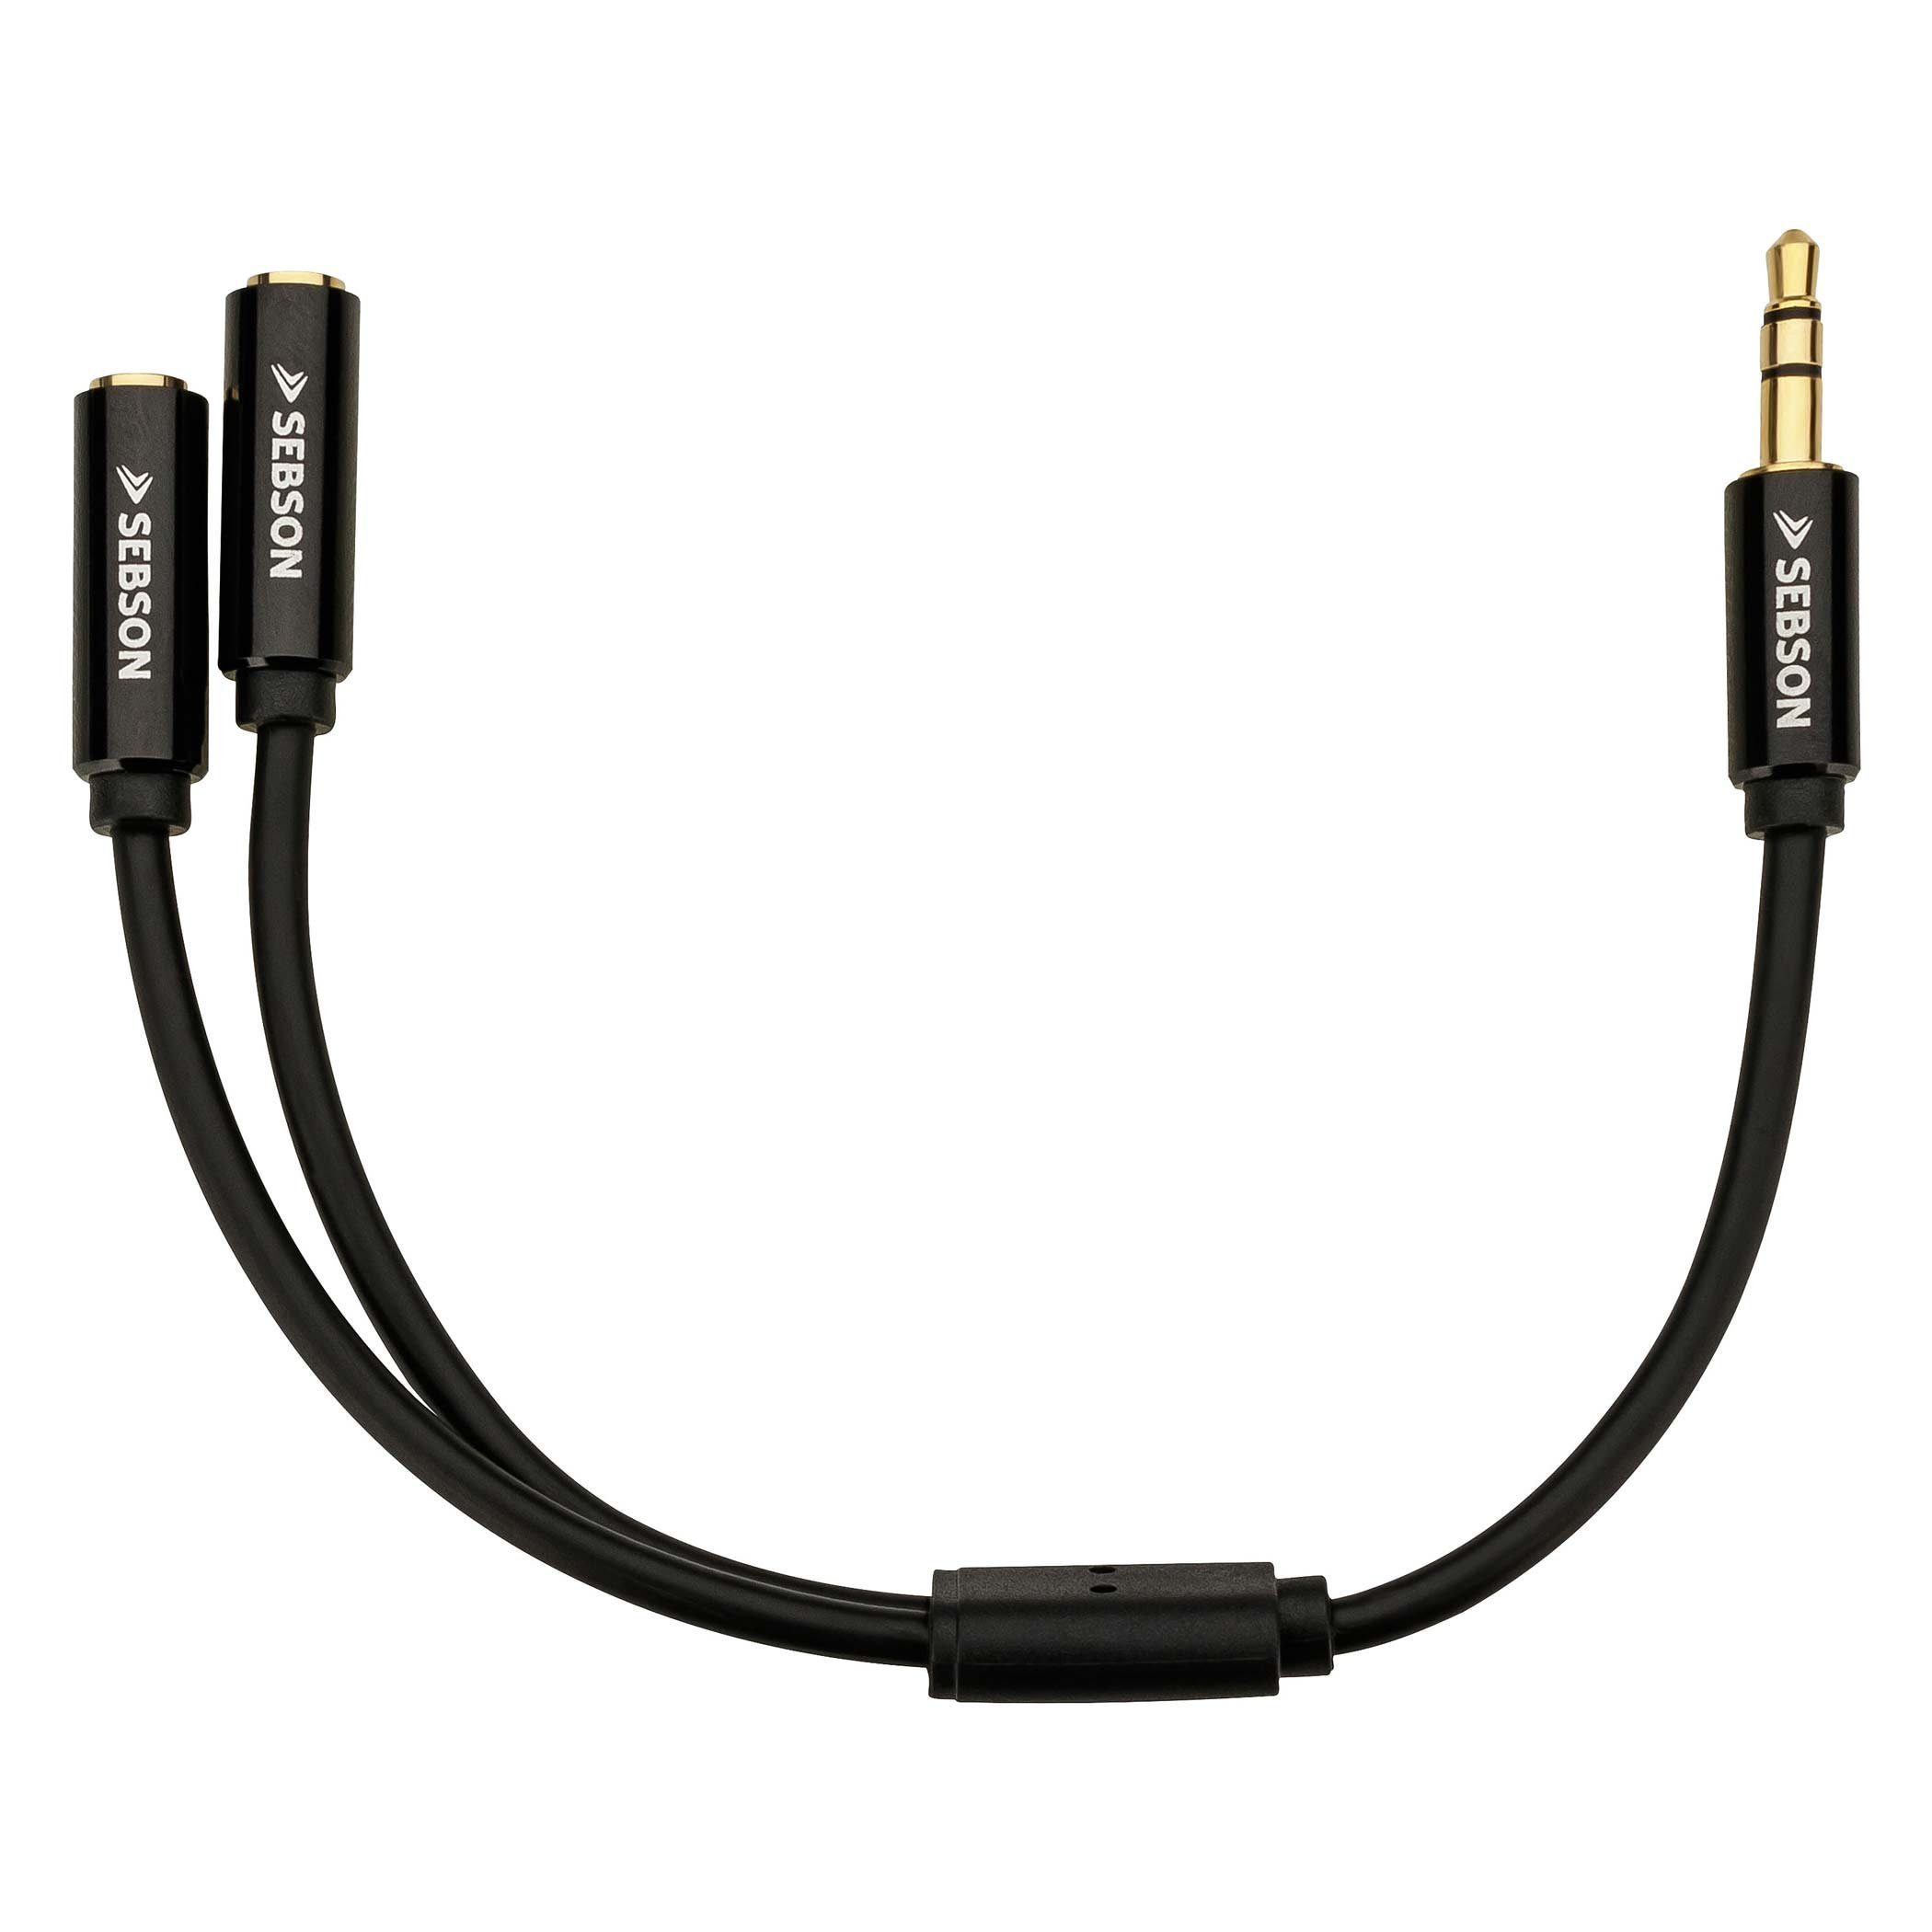 BestPlug 20cm Y Audio Aux in Out Kabel Adapter Verteiler Splitter Weiche Schwarz 1 3,5mm Stereo Klinke Stecker männlich auf 2 3,5mm Mono Klinke Buchse Kupplung weiblich 